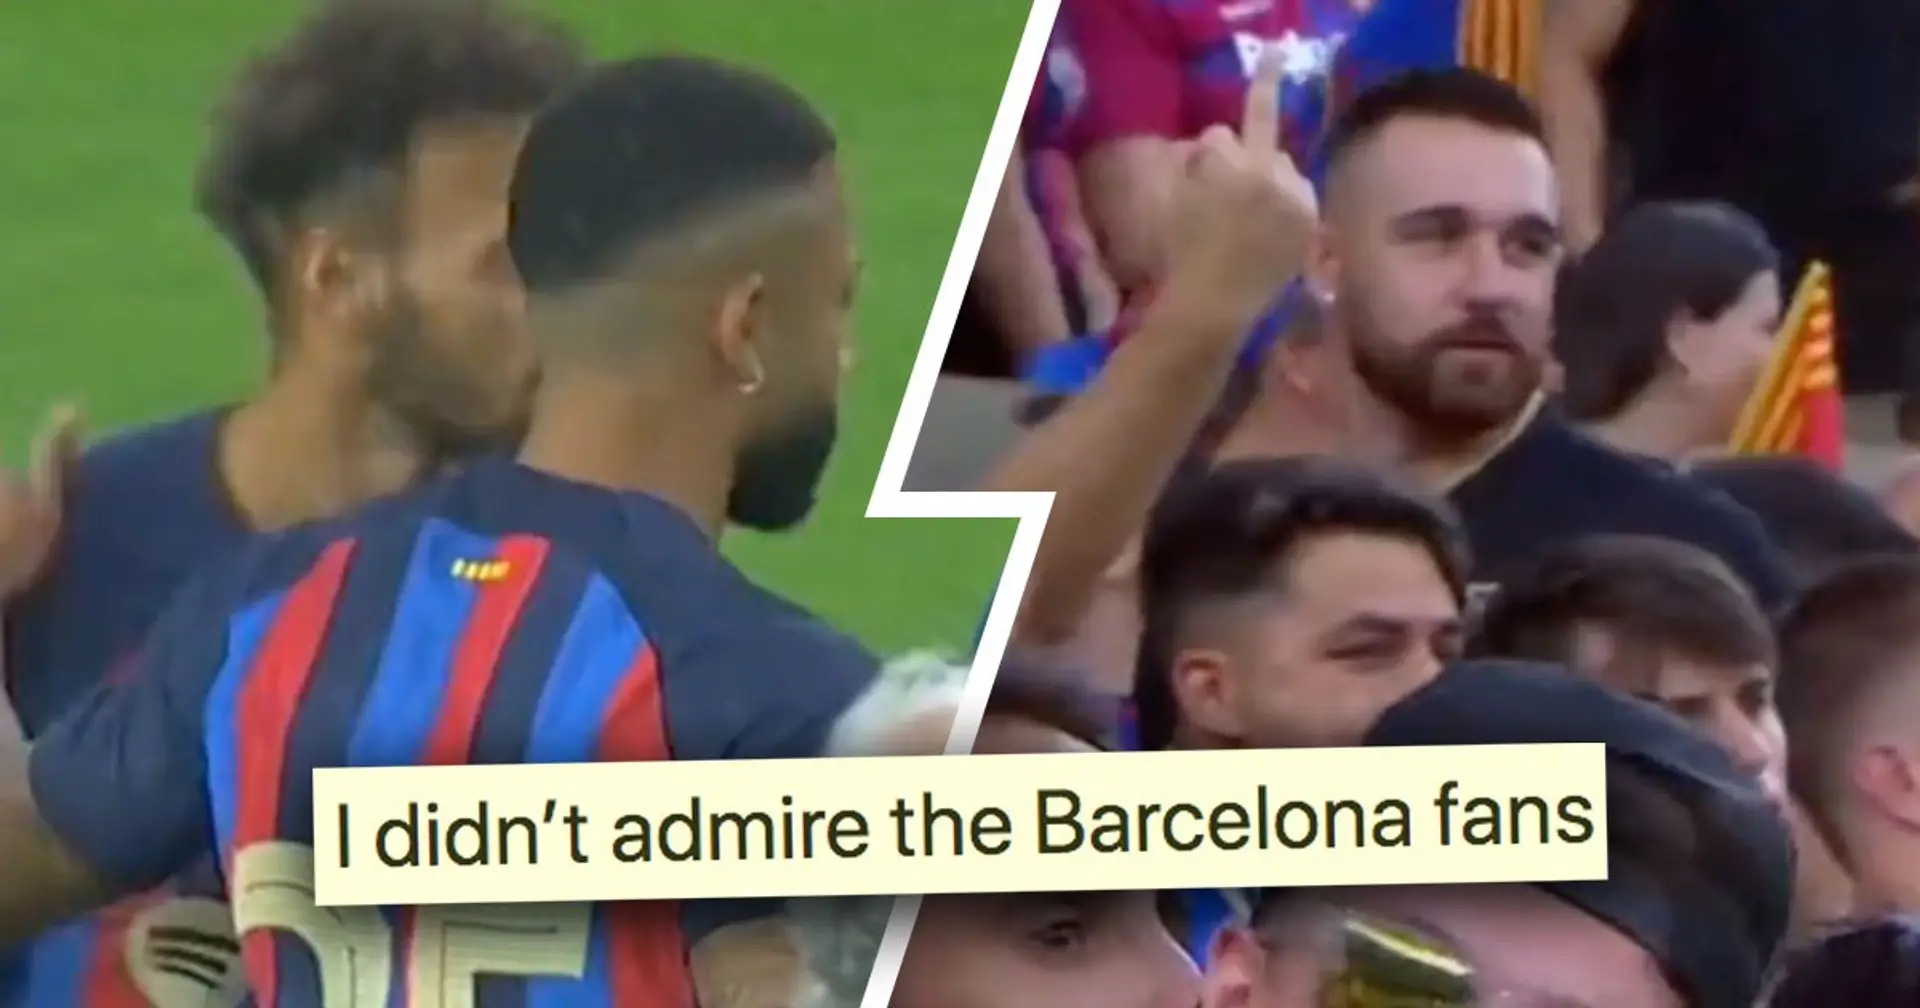 "Es ist nicht seine Schuld, dass er sich nicht beweisen konnte": Ein Fan reagiert auf Buh-Rufe gegen einen Barca-Spieler während der Präsentation